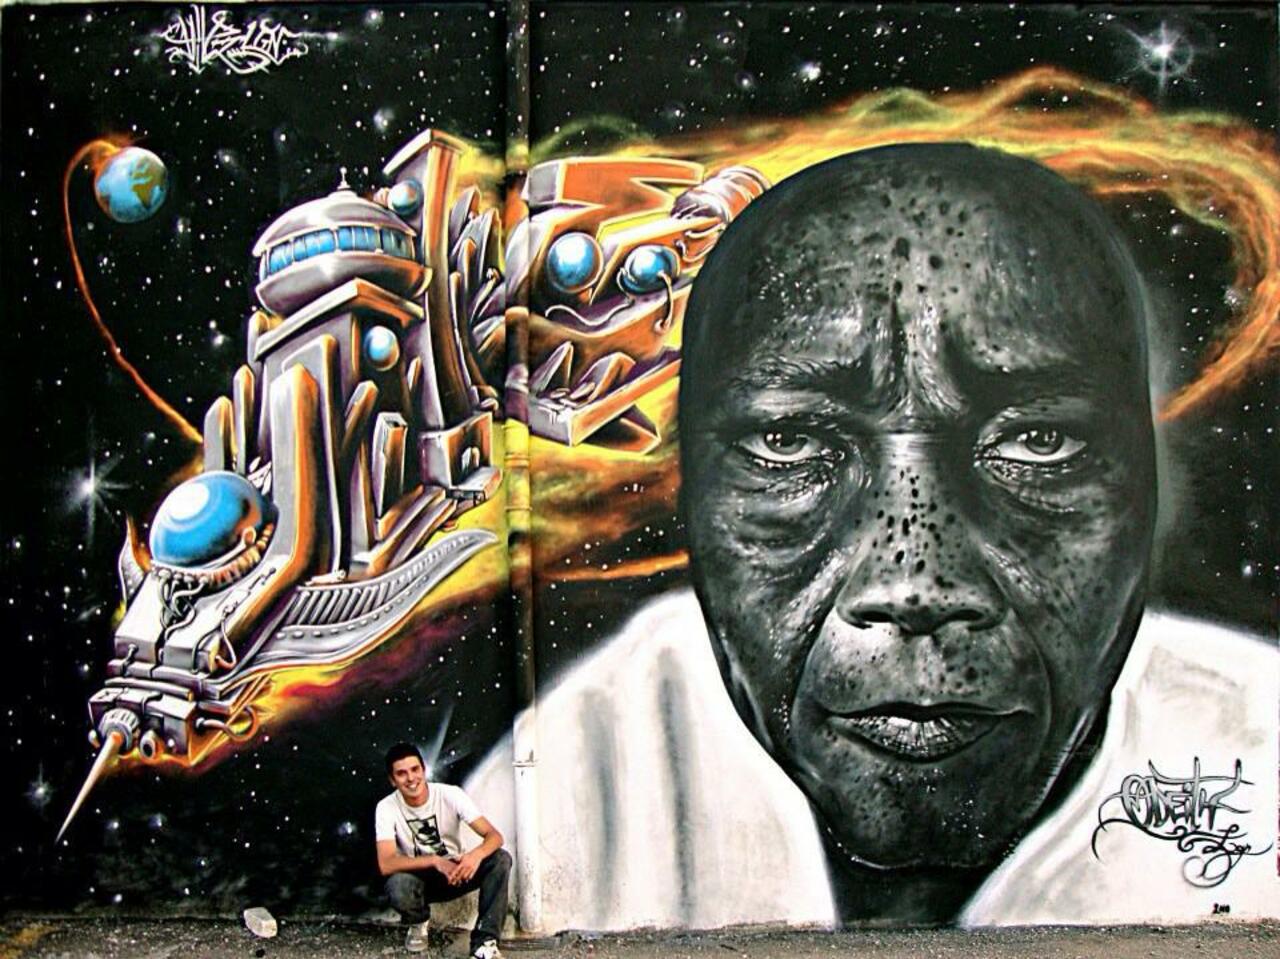 RT @GoogleStreetArt: Street Art by Vile & Odeith 

#art #arte #graffiti #streetart http://t.co/TdHuxRfT78